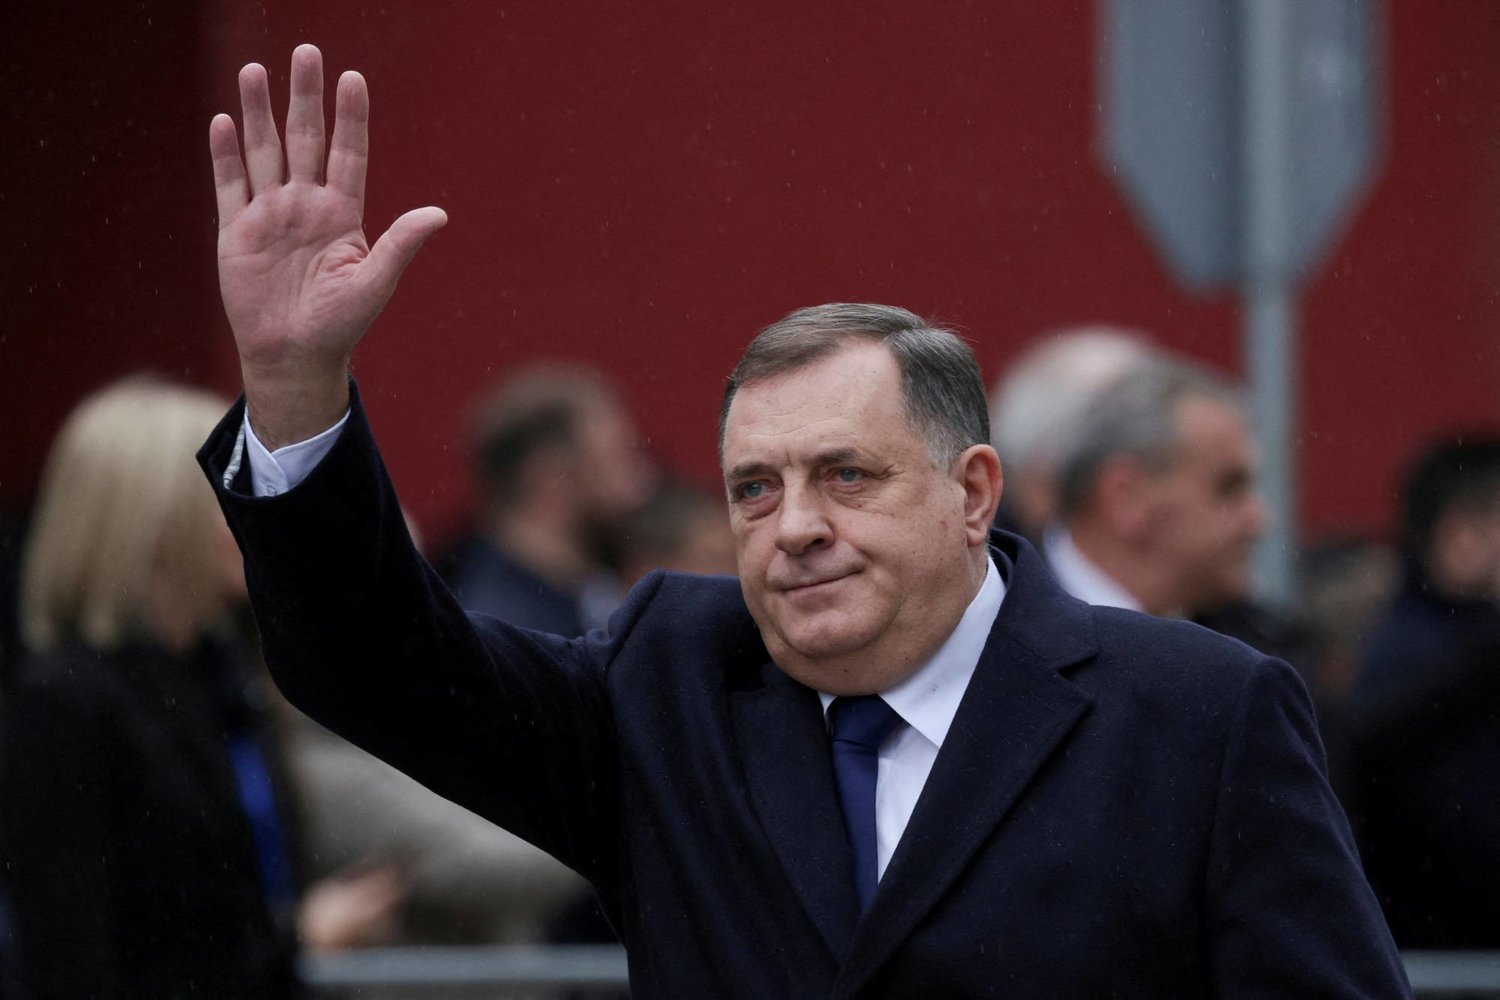 رئيس صرب البوسنة يوقع قانونان جديدان قد يشعلان الحرب البوسنية